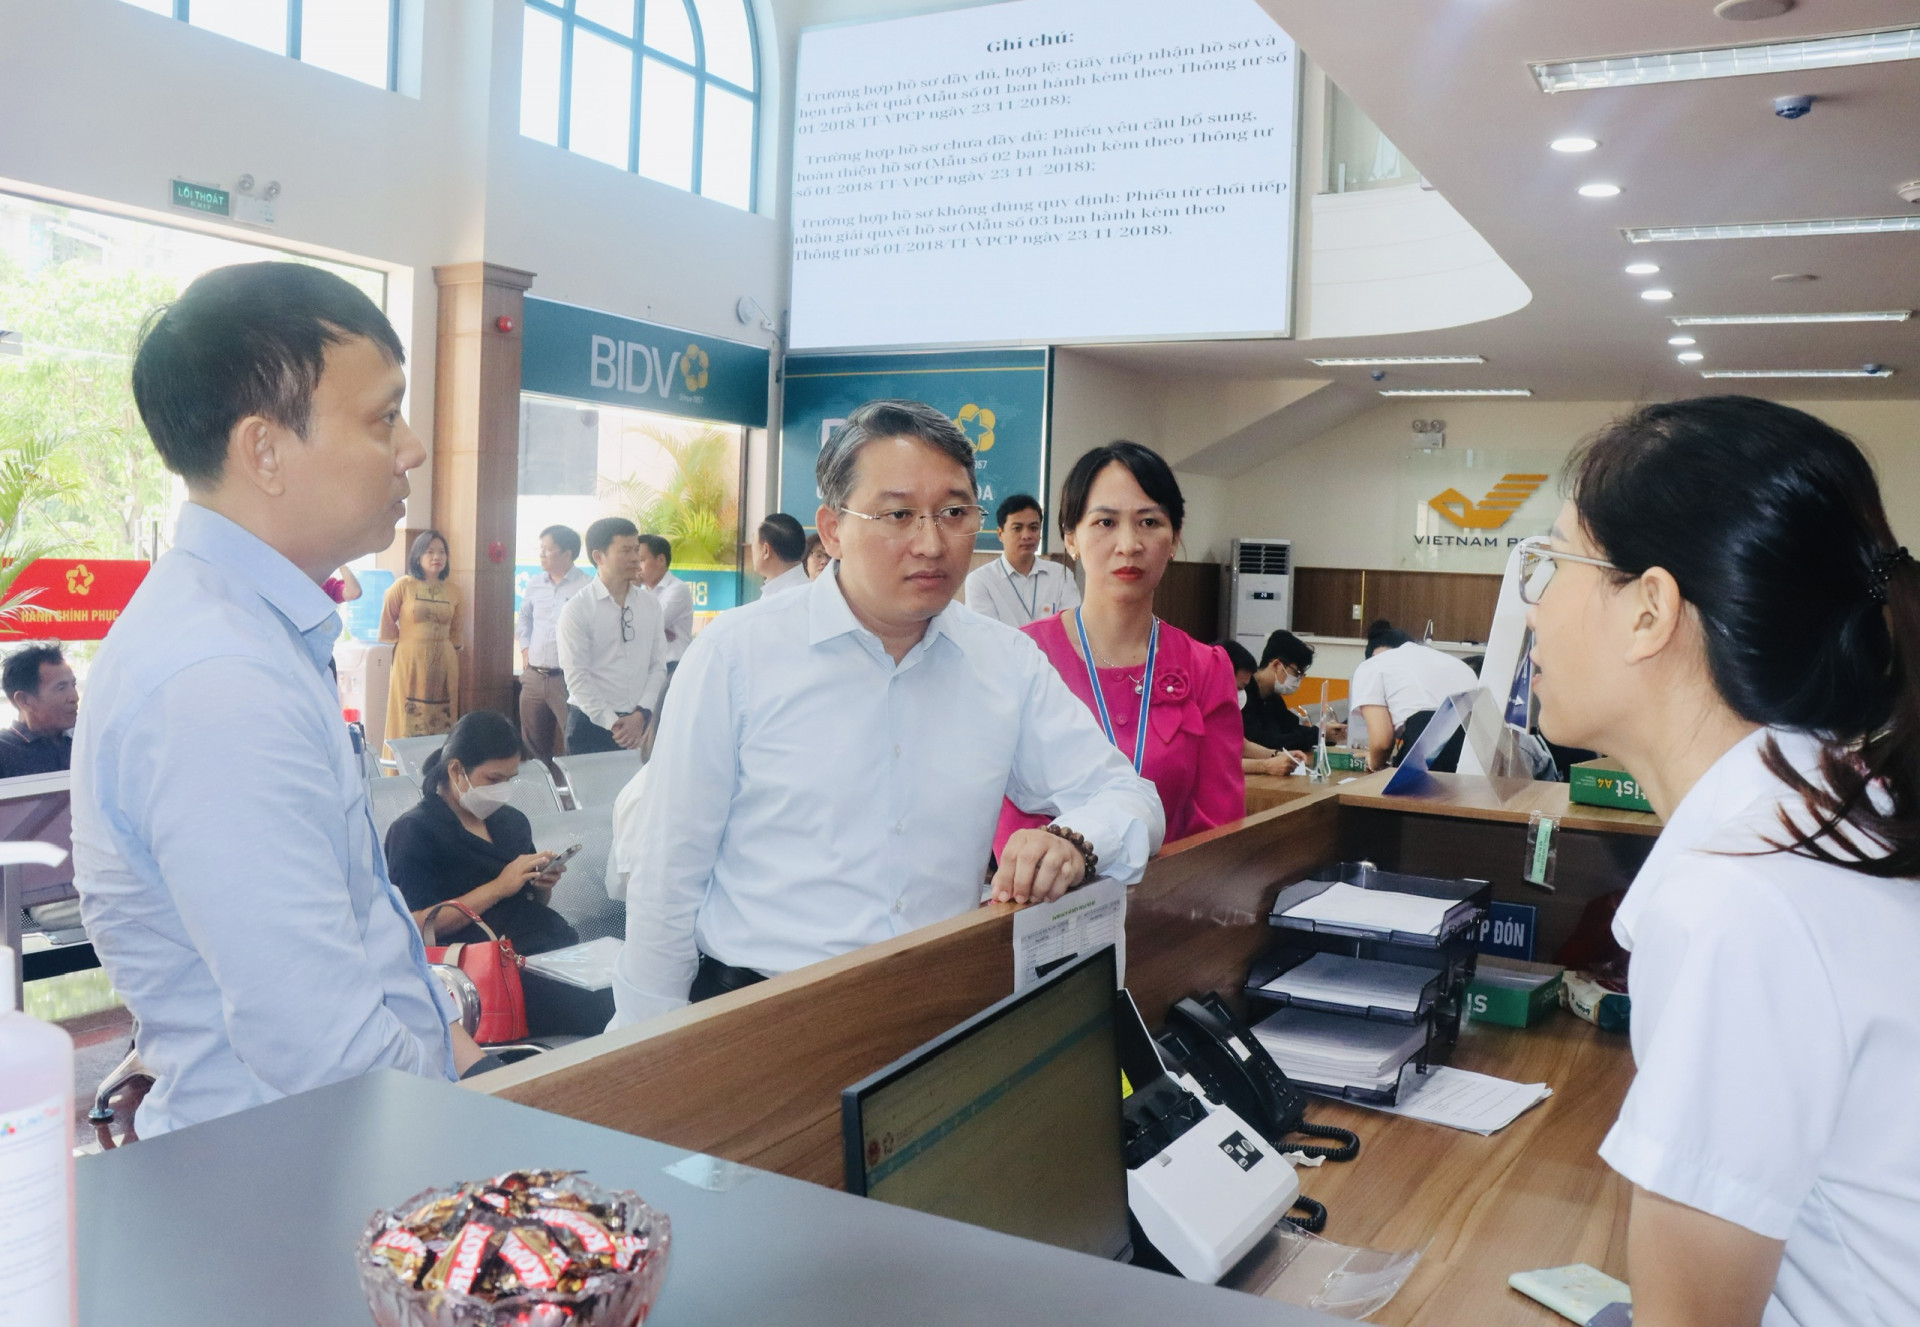 Bí thư Tỉnh ủy Nguyễn Hải Ninh trò chuyện với nhân viên Trung tâm để tìm hiểu về quy trình giải quyết thủ tục hành chính